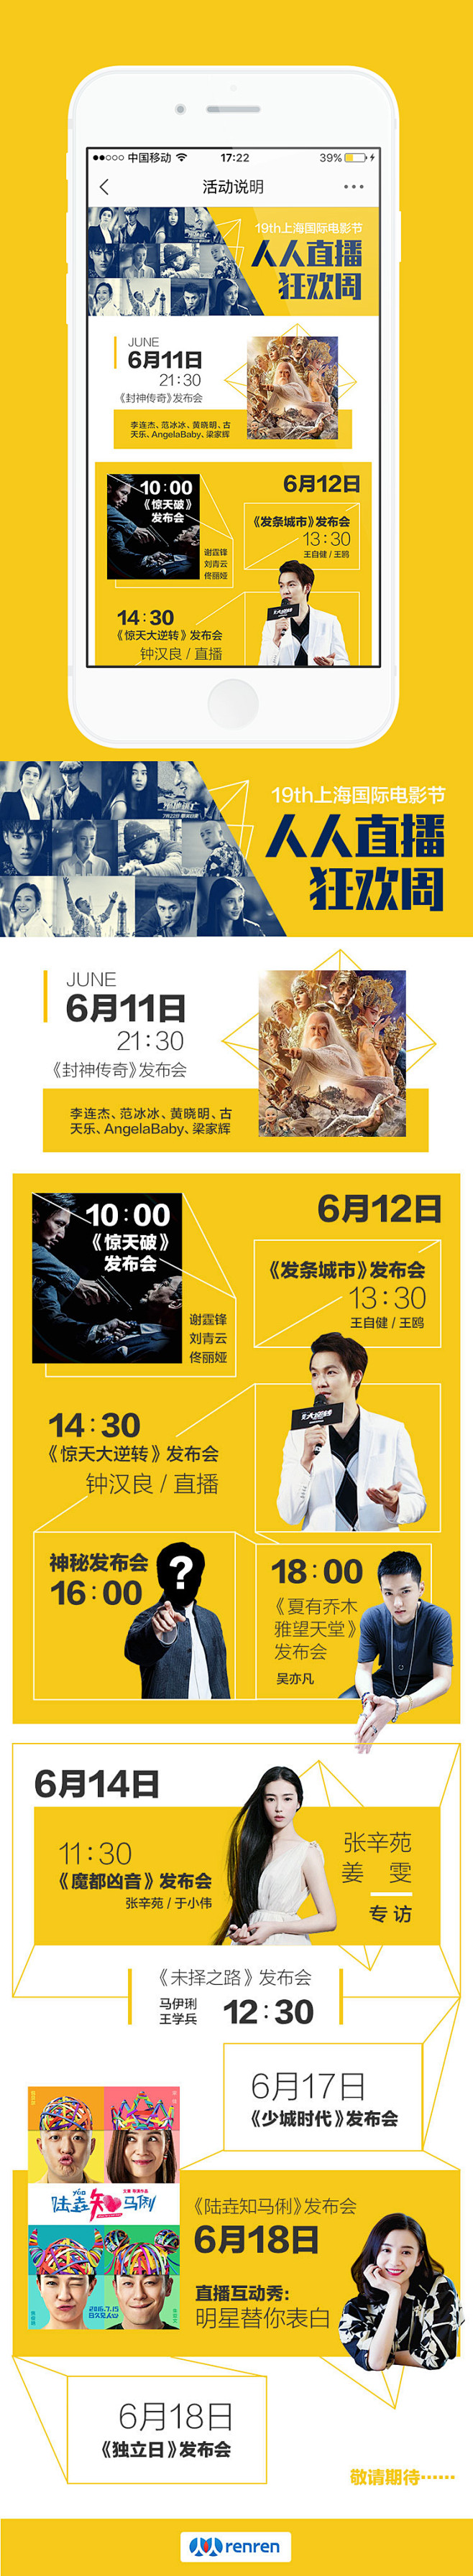 2016.6.8 上海国际电影节 活动周...